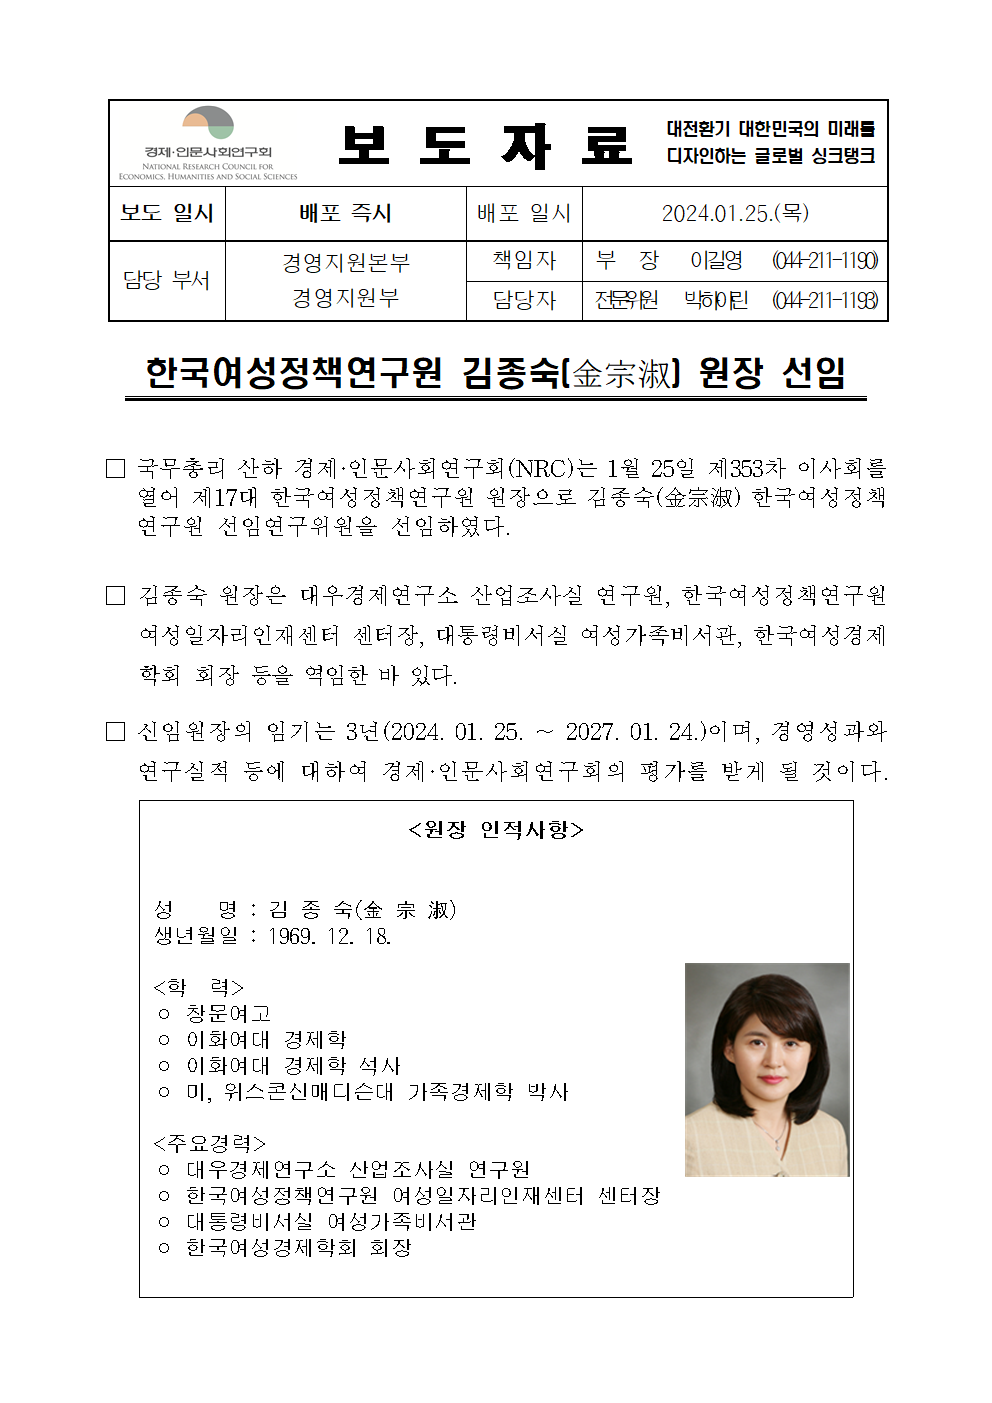 한국여성정책연구원 김종숙(金宗淑) 원장 선임 상세 하단 참조